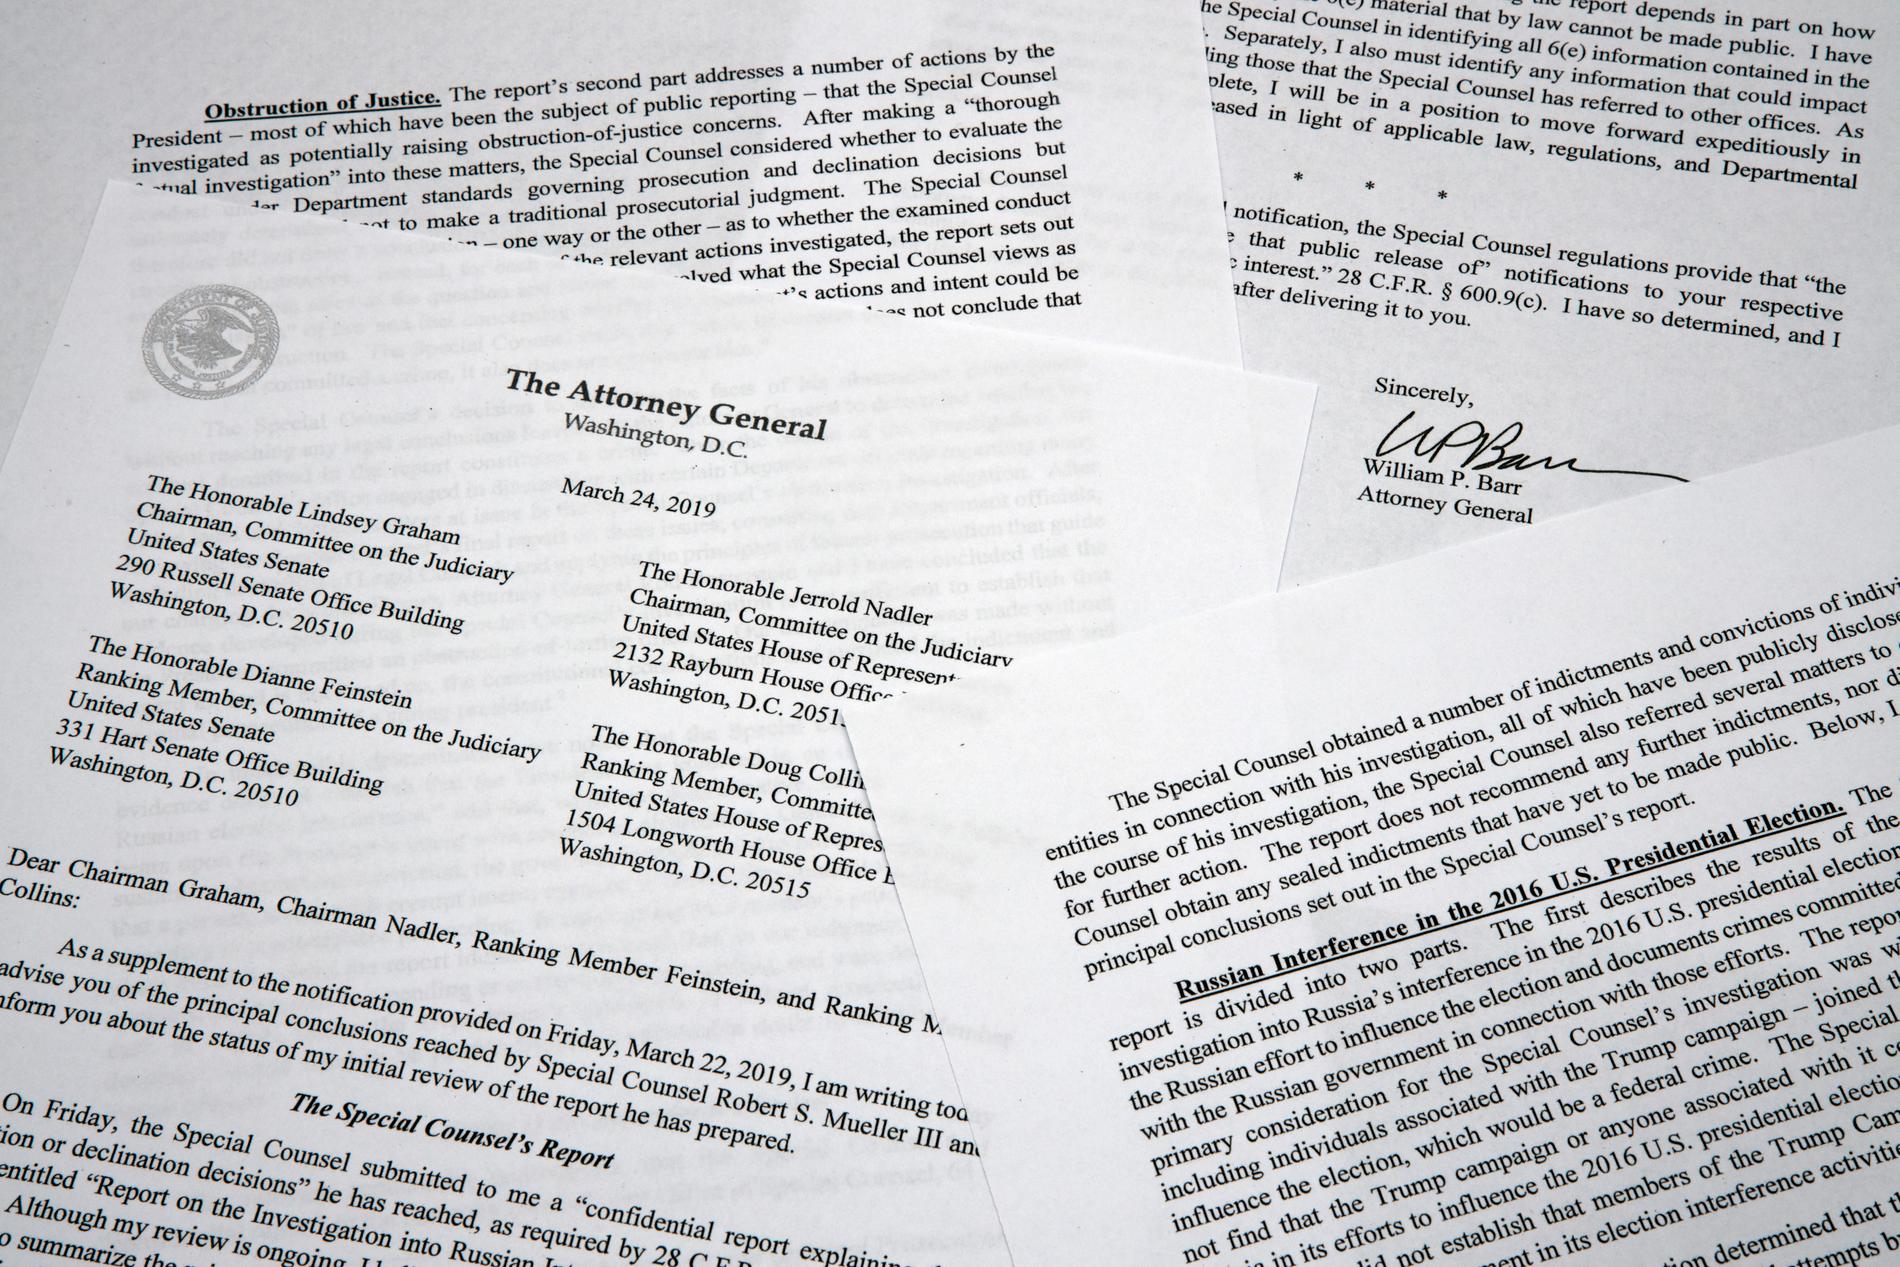 En kopia av brevet med sammanfattningen av den så kallade Rysslandsutredningen från USA:s justitieminister William Barr.